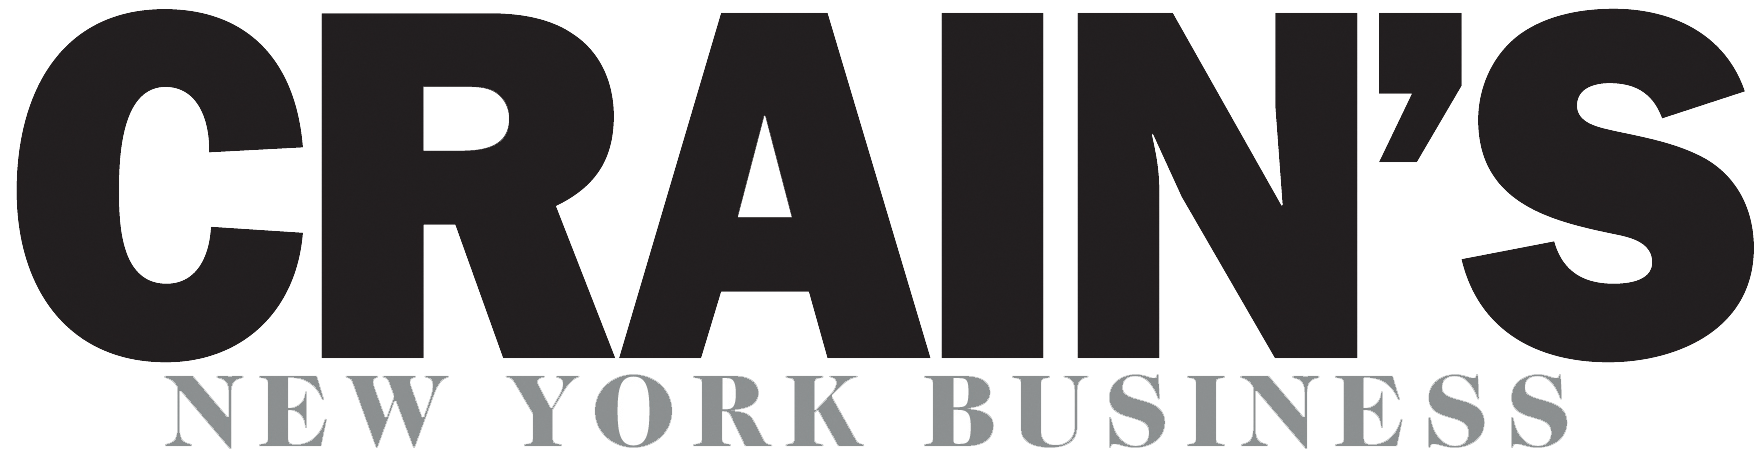 Crains-NY-logo.png